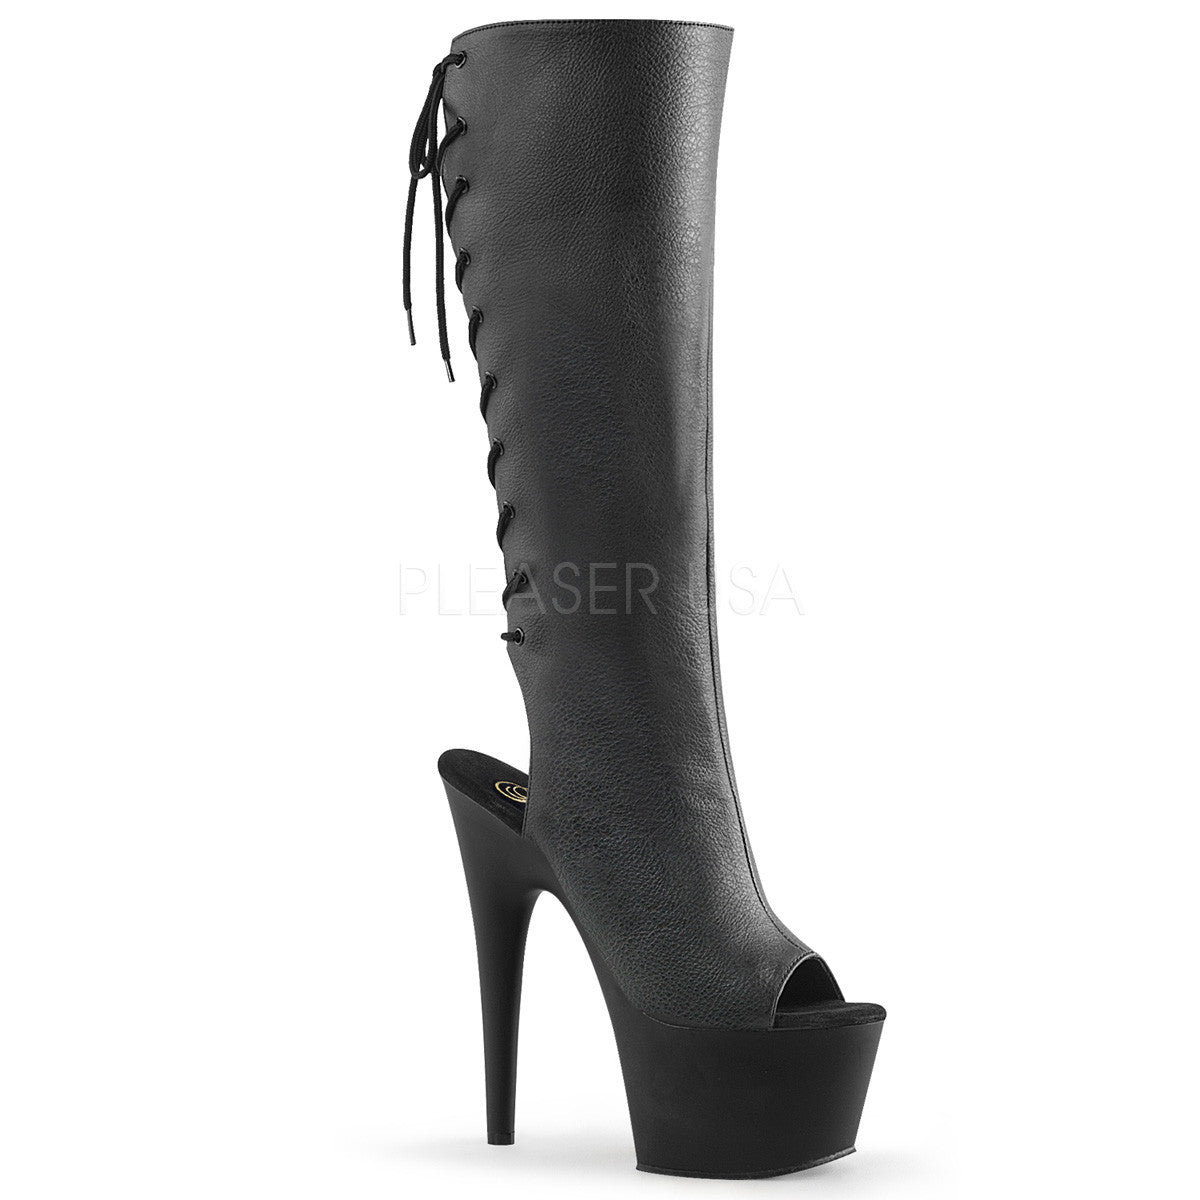 Pleaser ADORE-2018 Black Faux Leather Knee Boots - Shoecup.com - 1